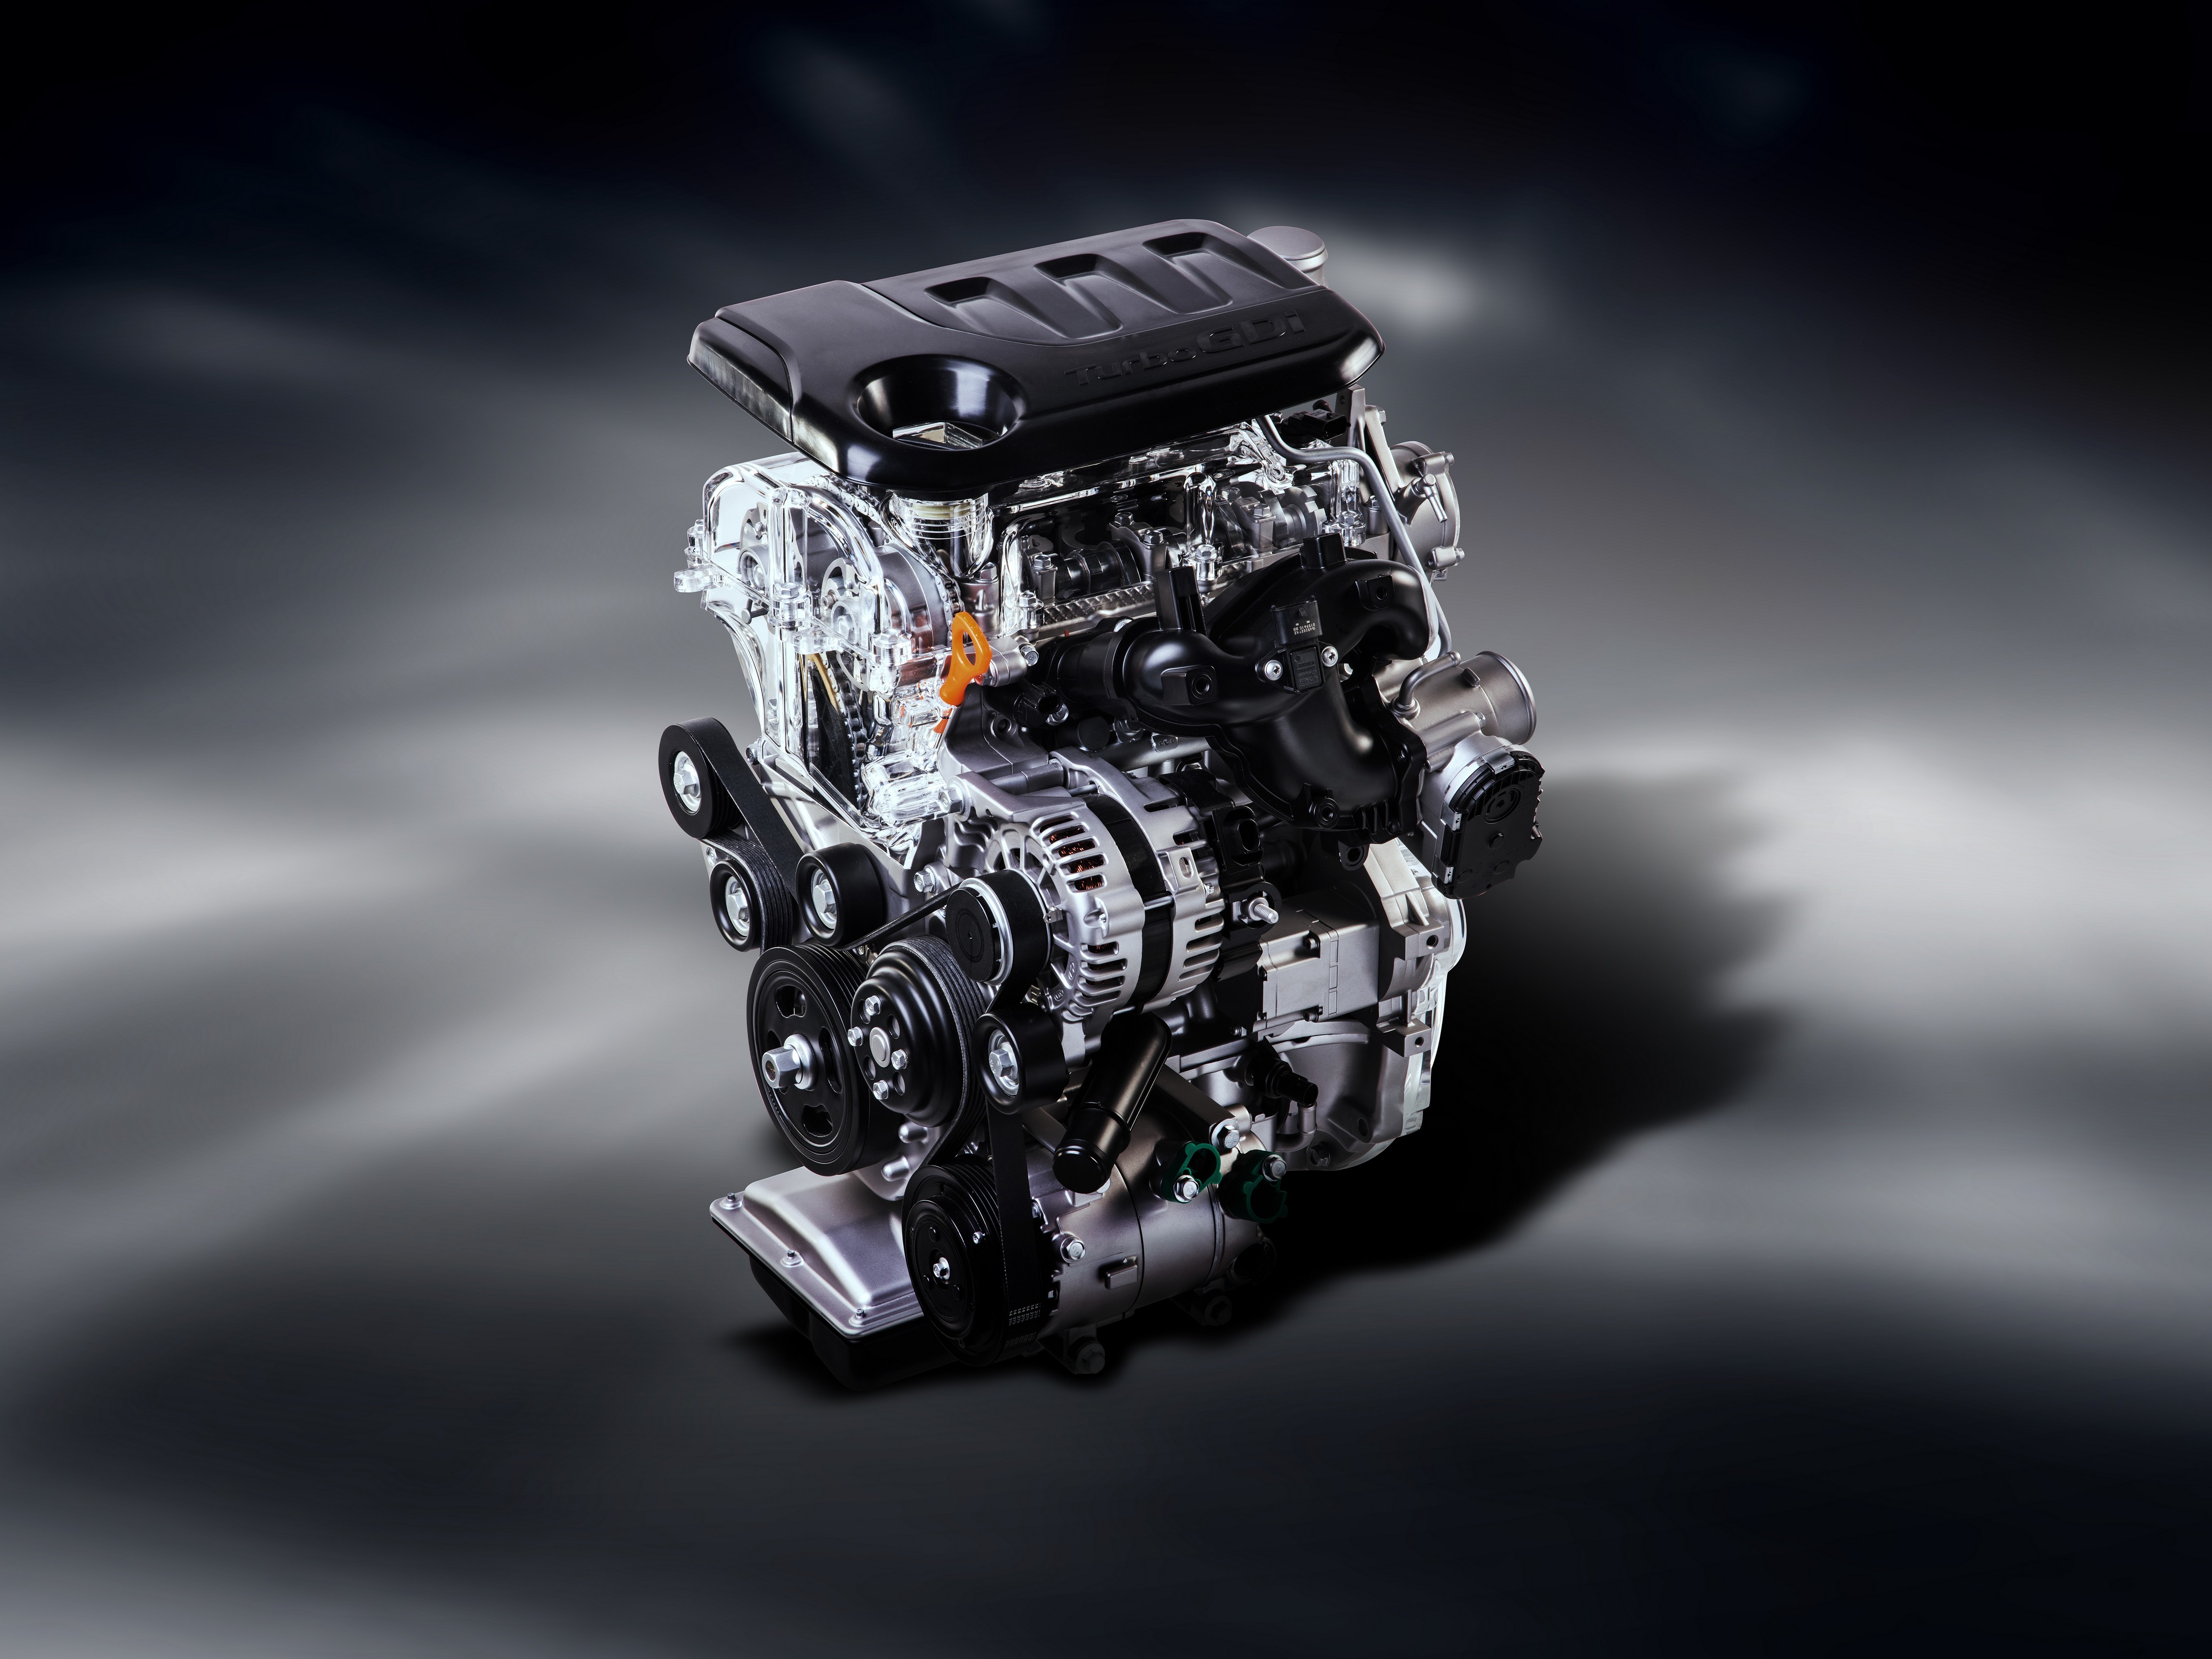 Kia presentará el nuevo motor 1.0 T-GDI en el Salón de Ginebra